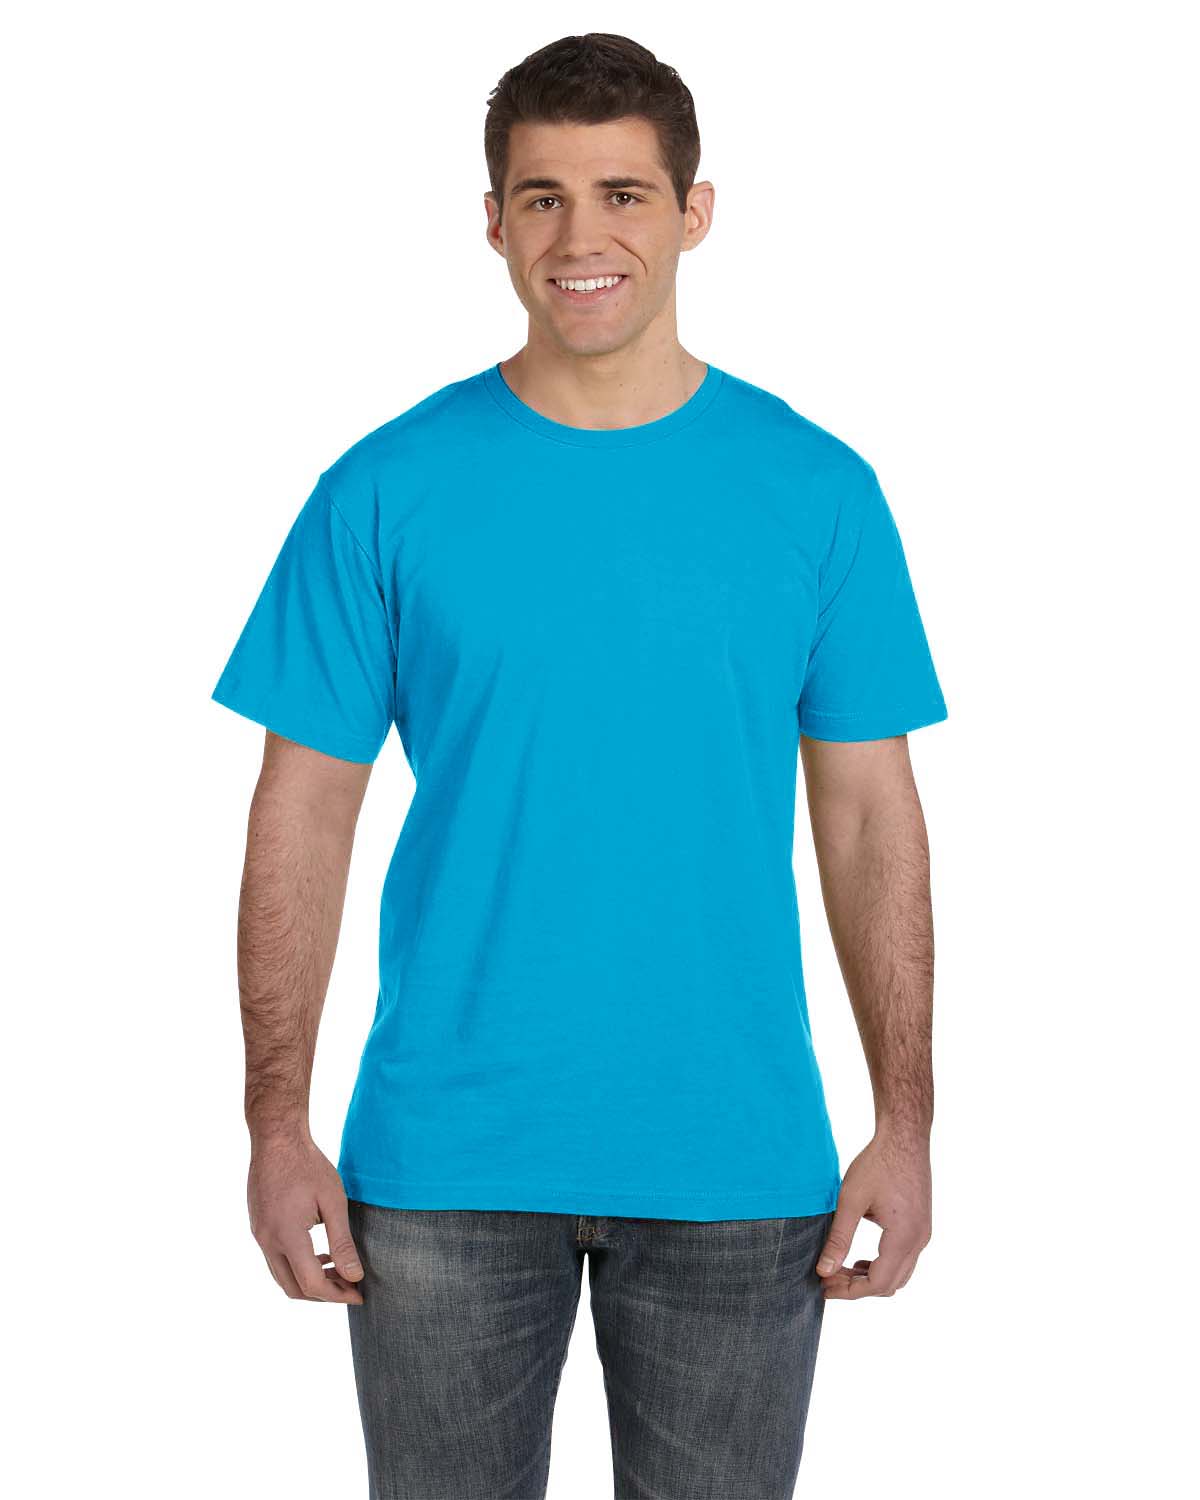 LAT 6901 - Fine Jersey T-Shirt $3.87 - T-Shirts